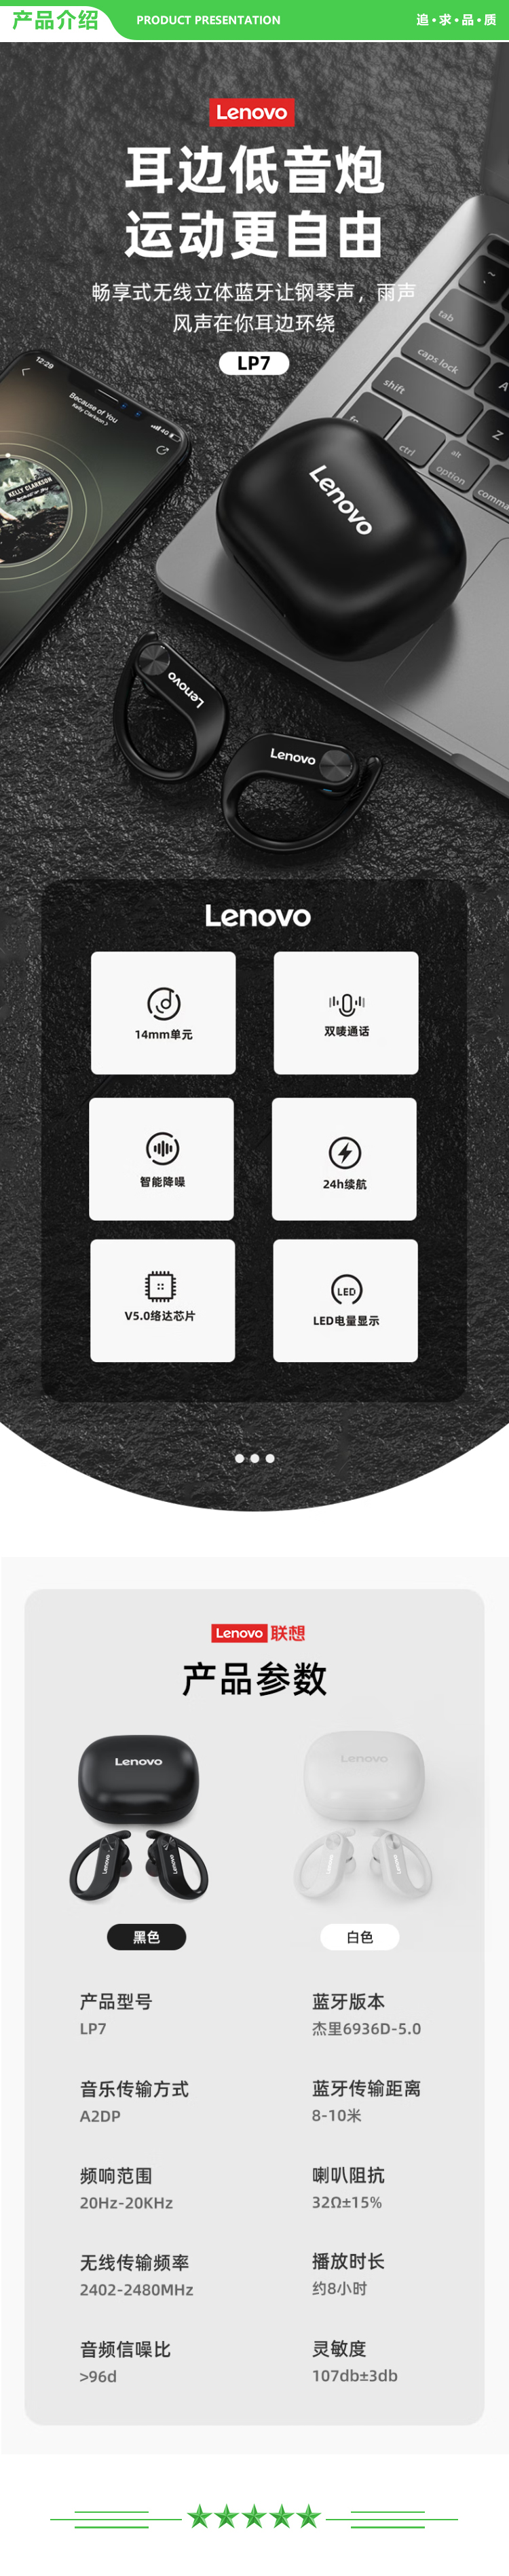 联想 Lenovo LP7 黑色 真无线蓝牙耳机挂耳式降噪音乐运动跑步开车通话一加华为苹果小米手机通用【超长续航 IPX5级防水】 .jpg